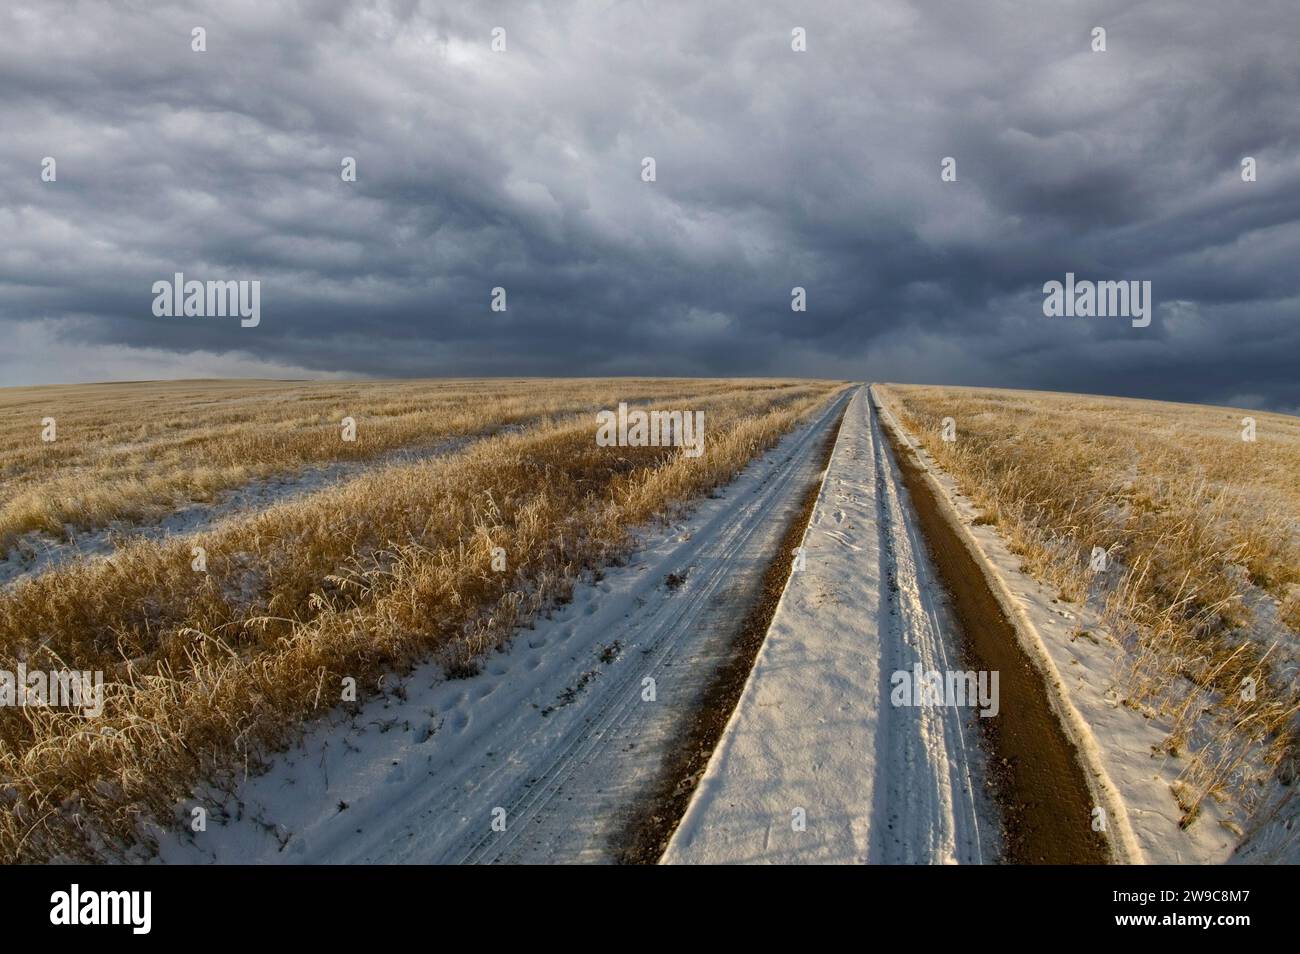 Strada sterrata ricoperta di neve attraverso un campo vuoto con nuvole di tempeste che si stanno diffondendo all'orizzonte Foto Stock